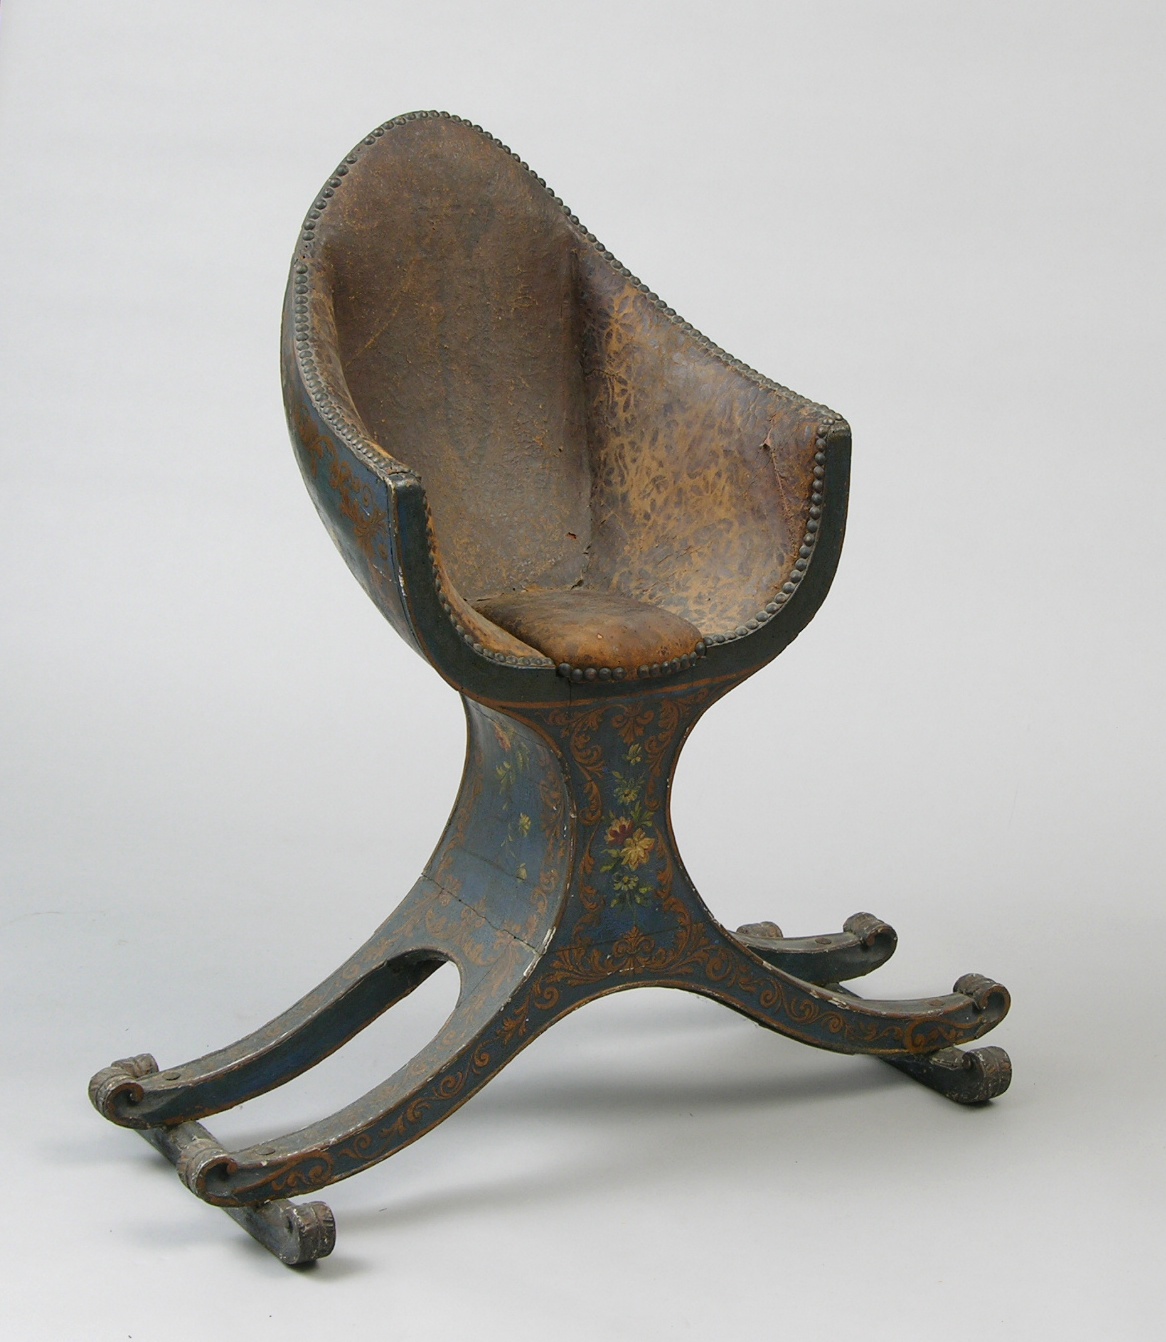 An Elaborate Barrel Chair, ca. 17th/18th Century, 09.22.07, Sold: $1092.5